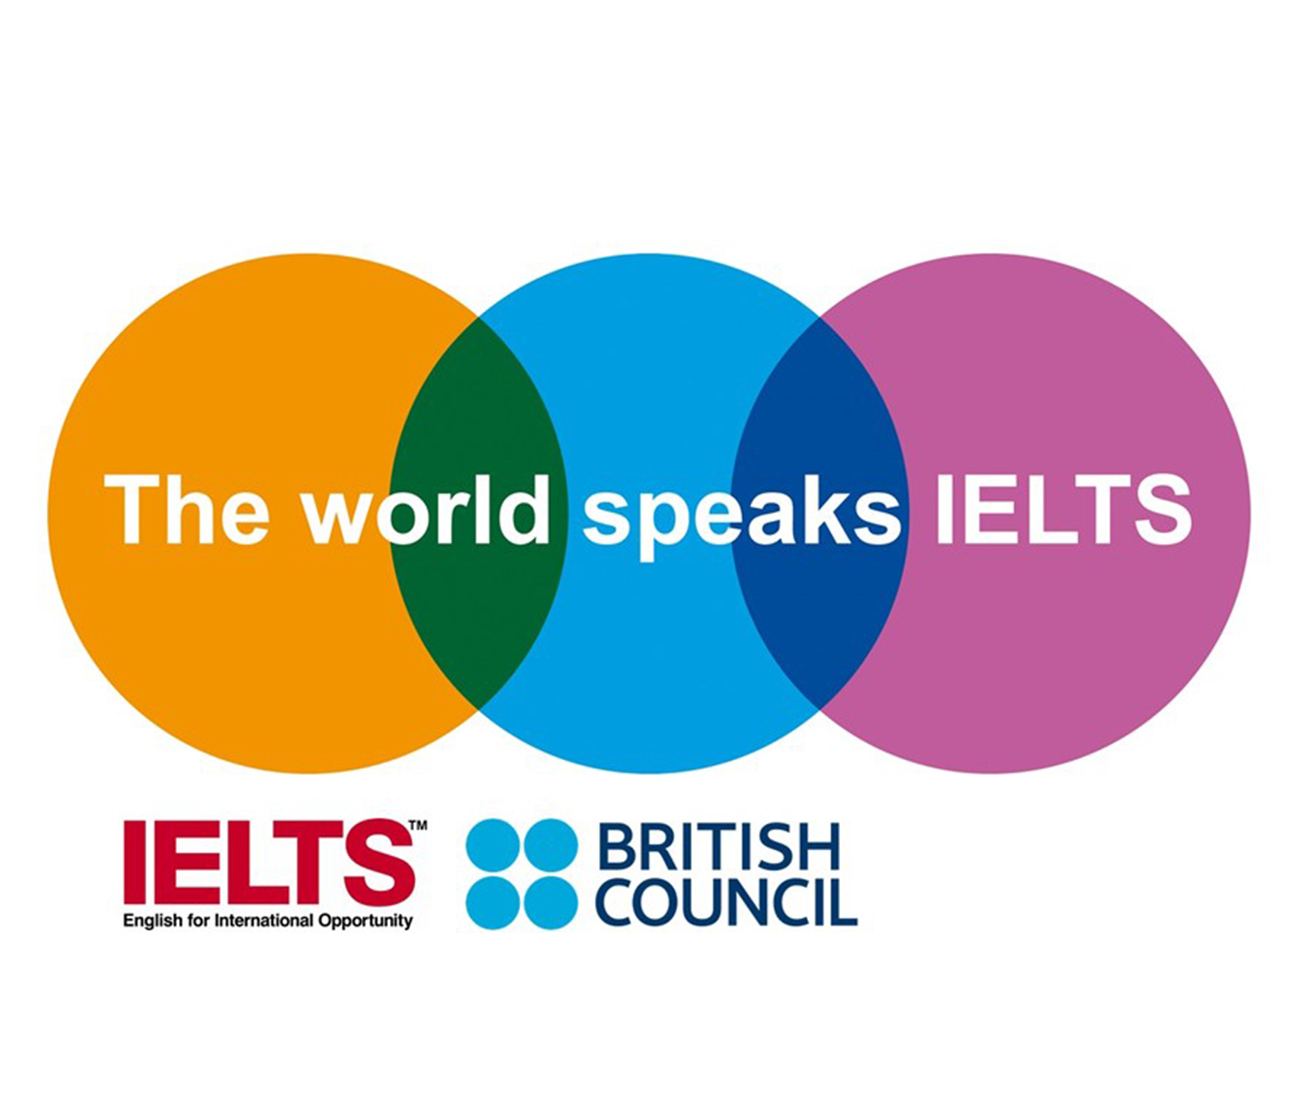 Ενδιαφέρεστε να σπουδάσετε ή να εργαστείτε στην Ευρώπη; Το IELTS θα σας βοηθήσει να το επιτύχετε.